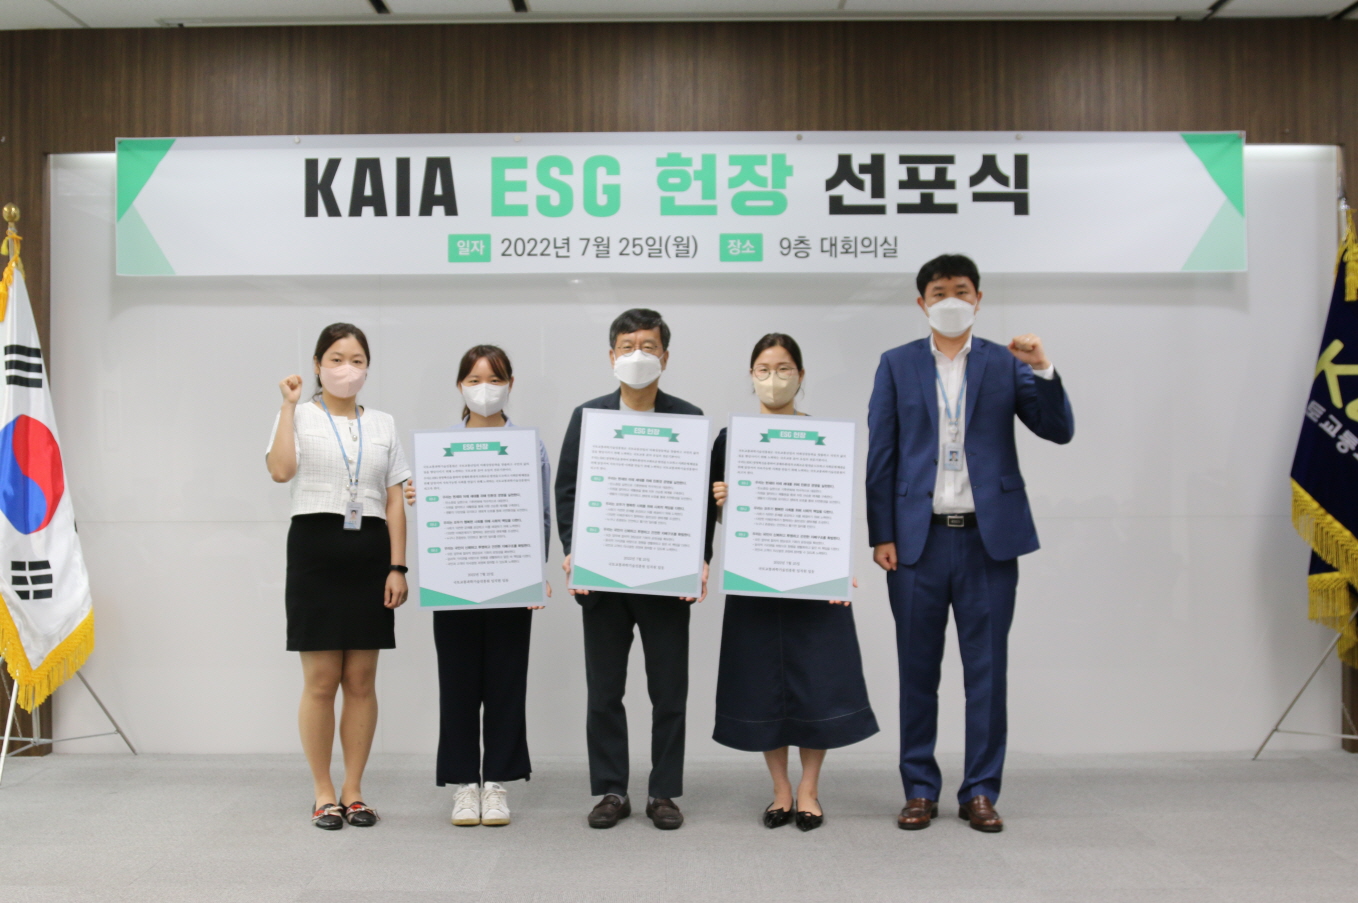 KAIA ESG 선포식 개최